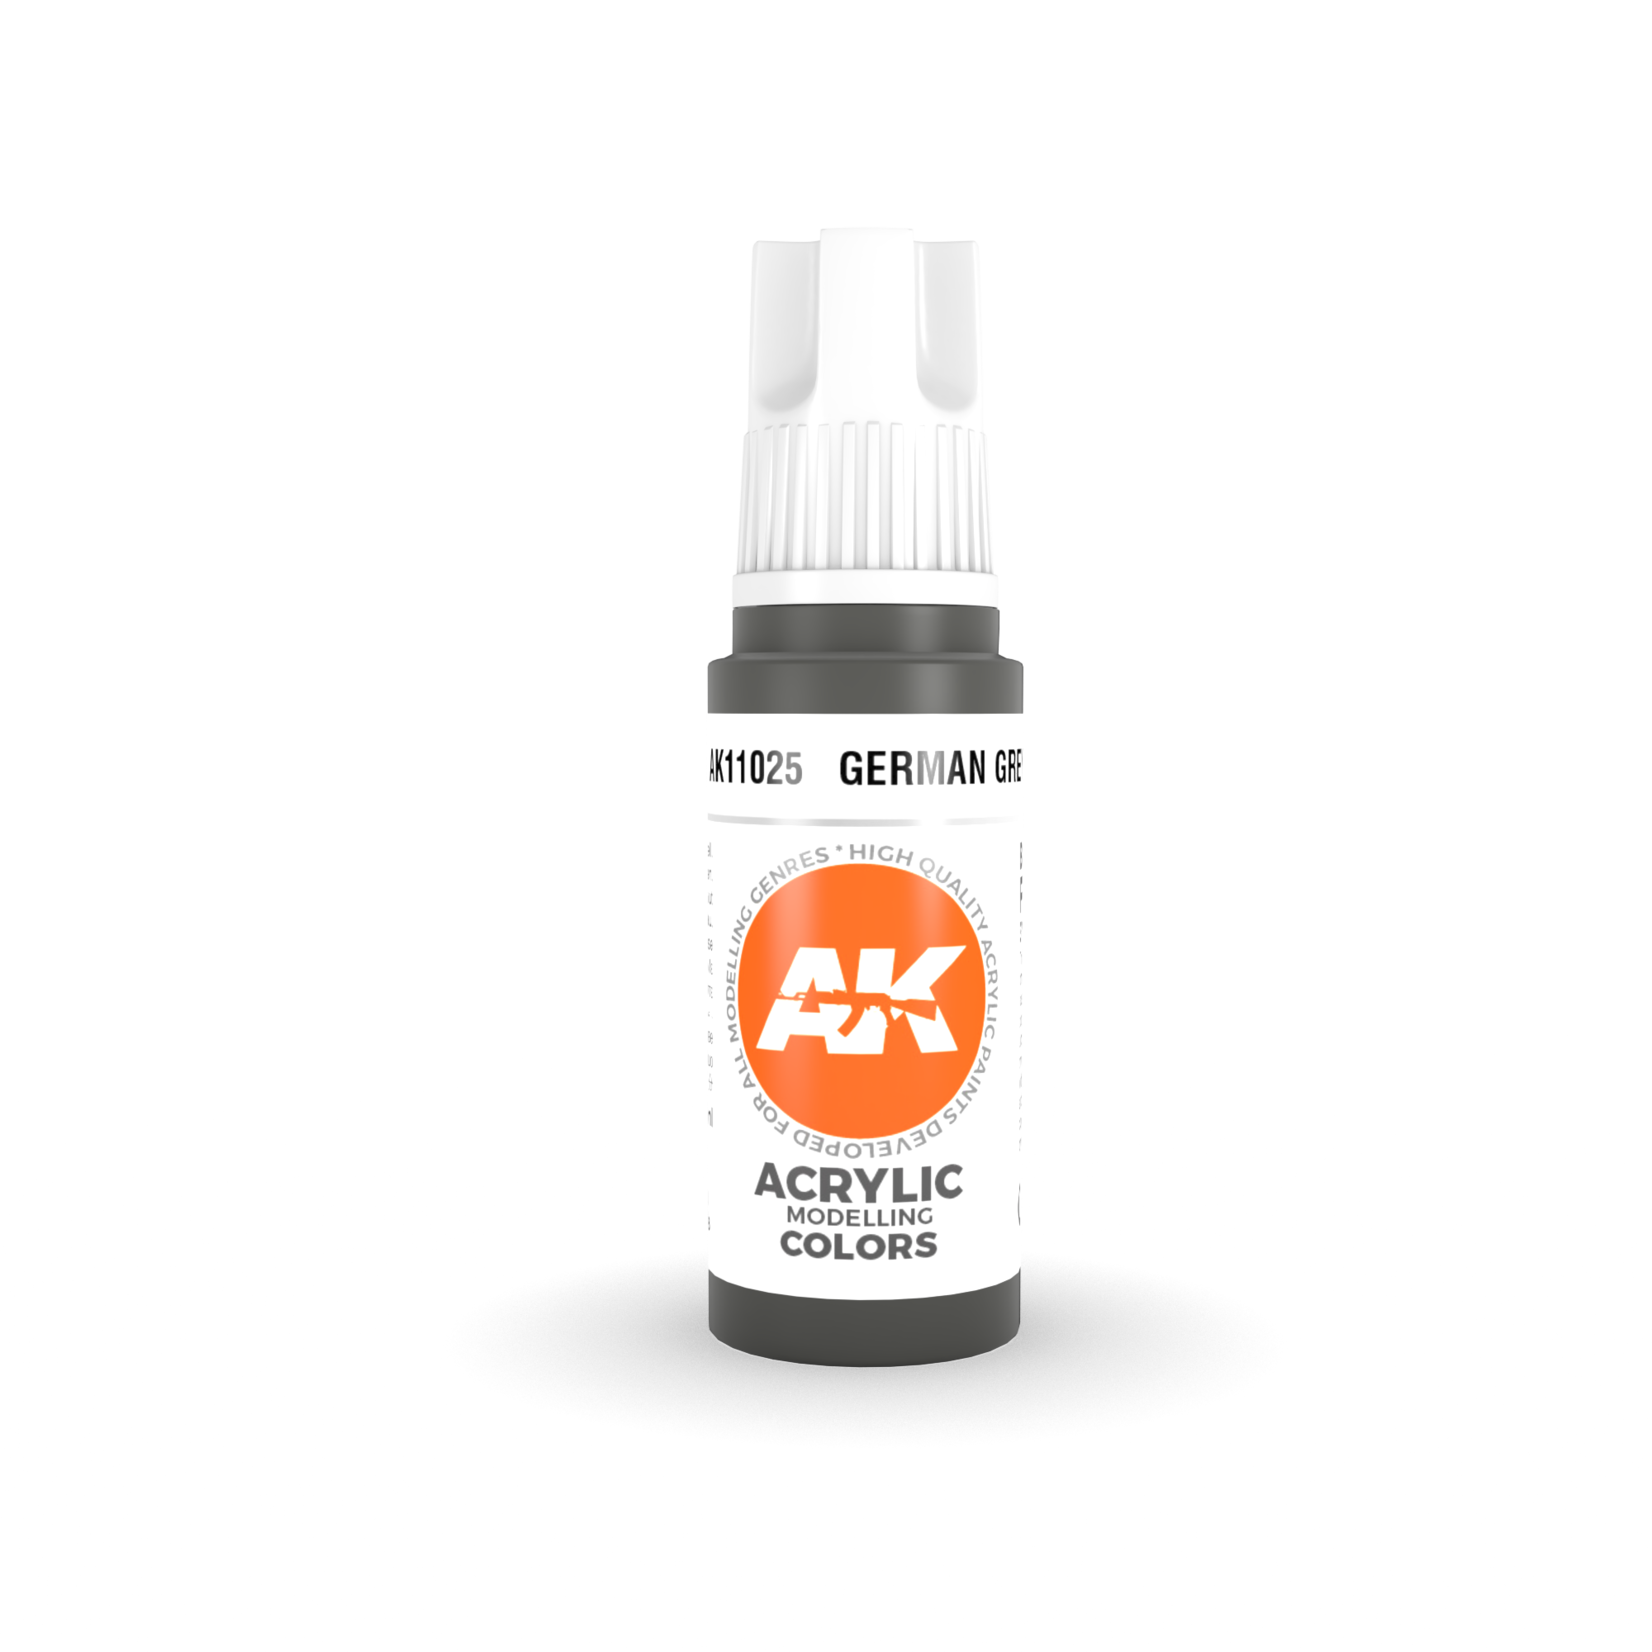 AK Interactive AK11025 3G Acrylic German Grey 17ml